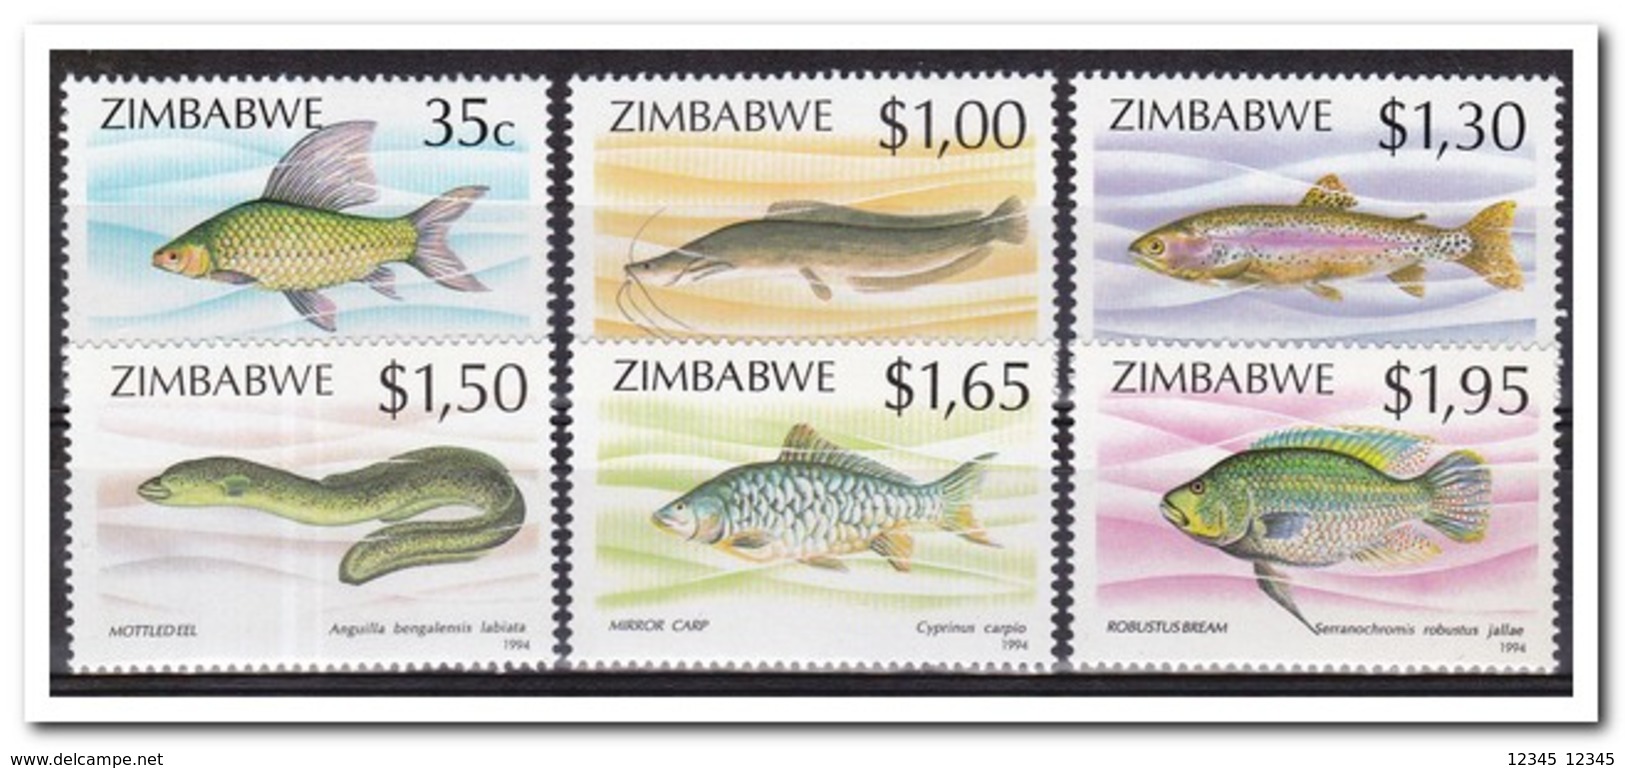 Zimbabwe 1994, Postfris MNH, Fish - Zimbabwe (1980-...)